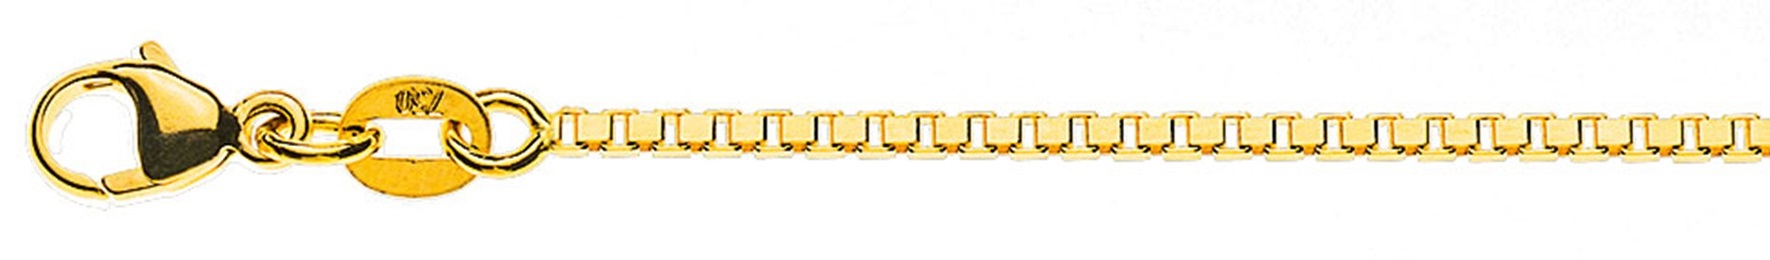 AURONOS Prestige Halskette Gelbgold 18K Venezianerkette diamantiert 42cm 1.4mm